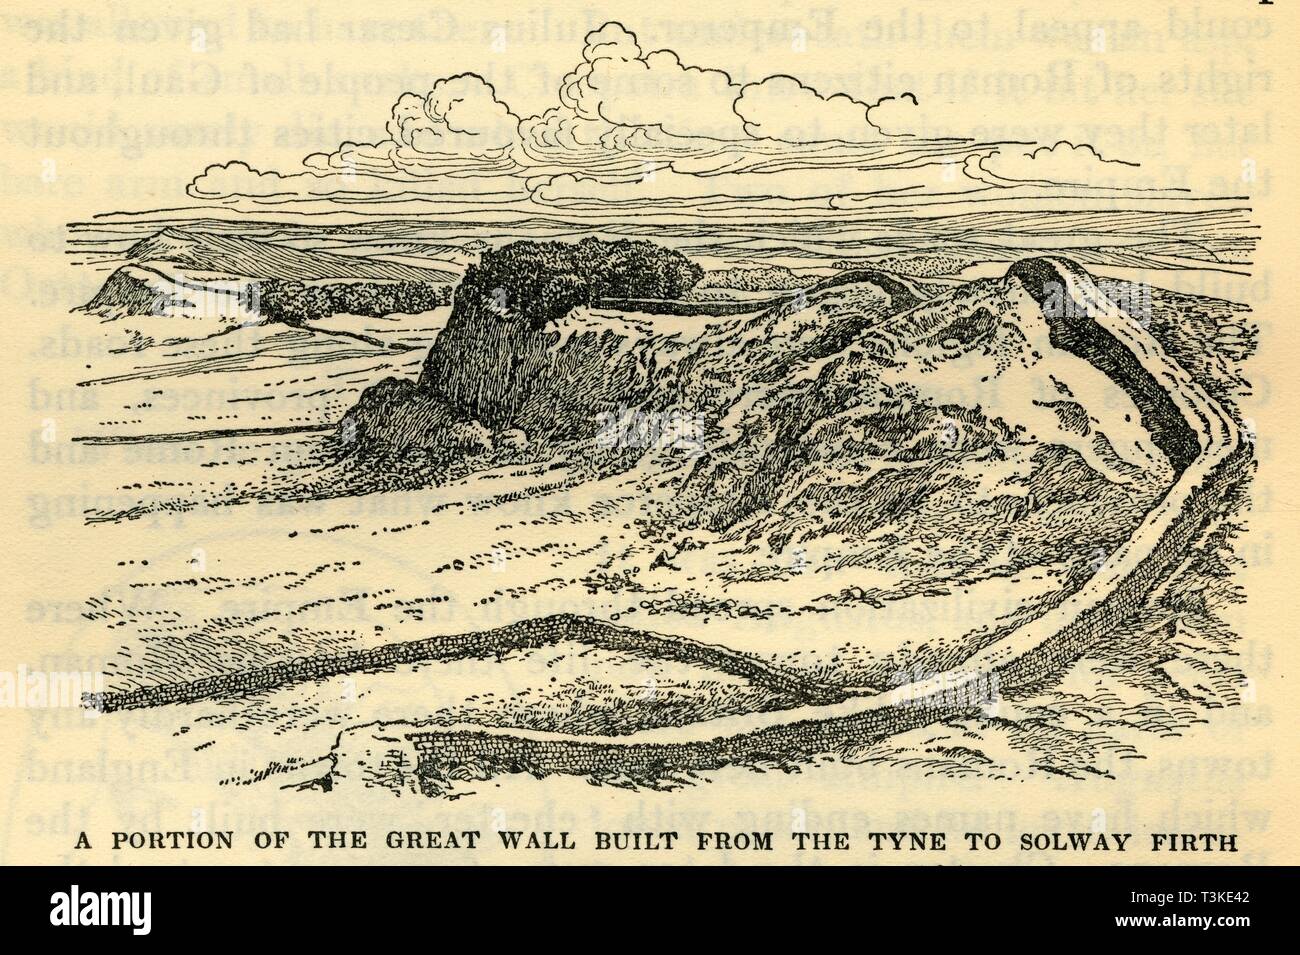 'Une partie de la Grande muraille construite à partir de la Tyne à Solway Firth par l'empereur Hadrien en 121 après J.-C." Créateur : Inconnu. Banque D'Images